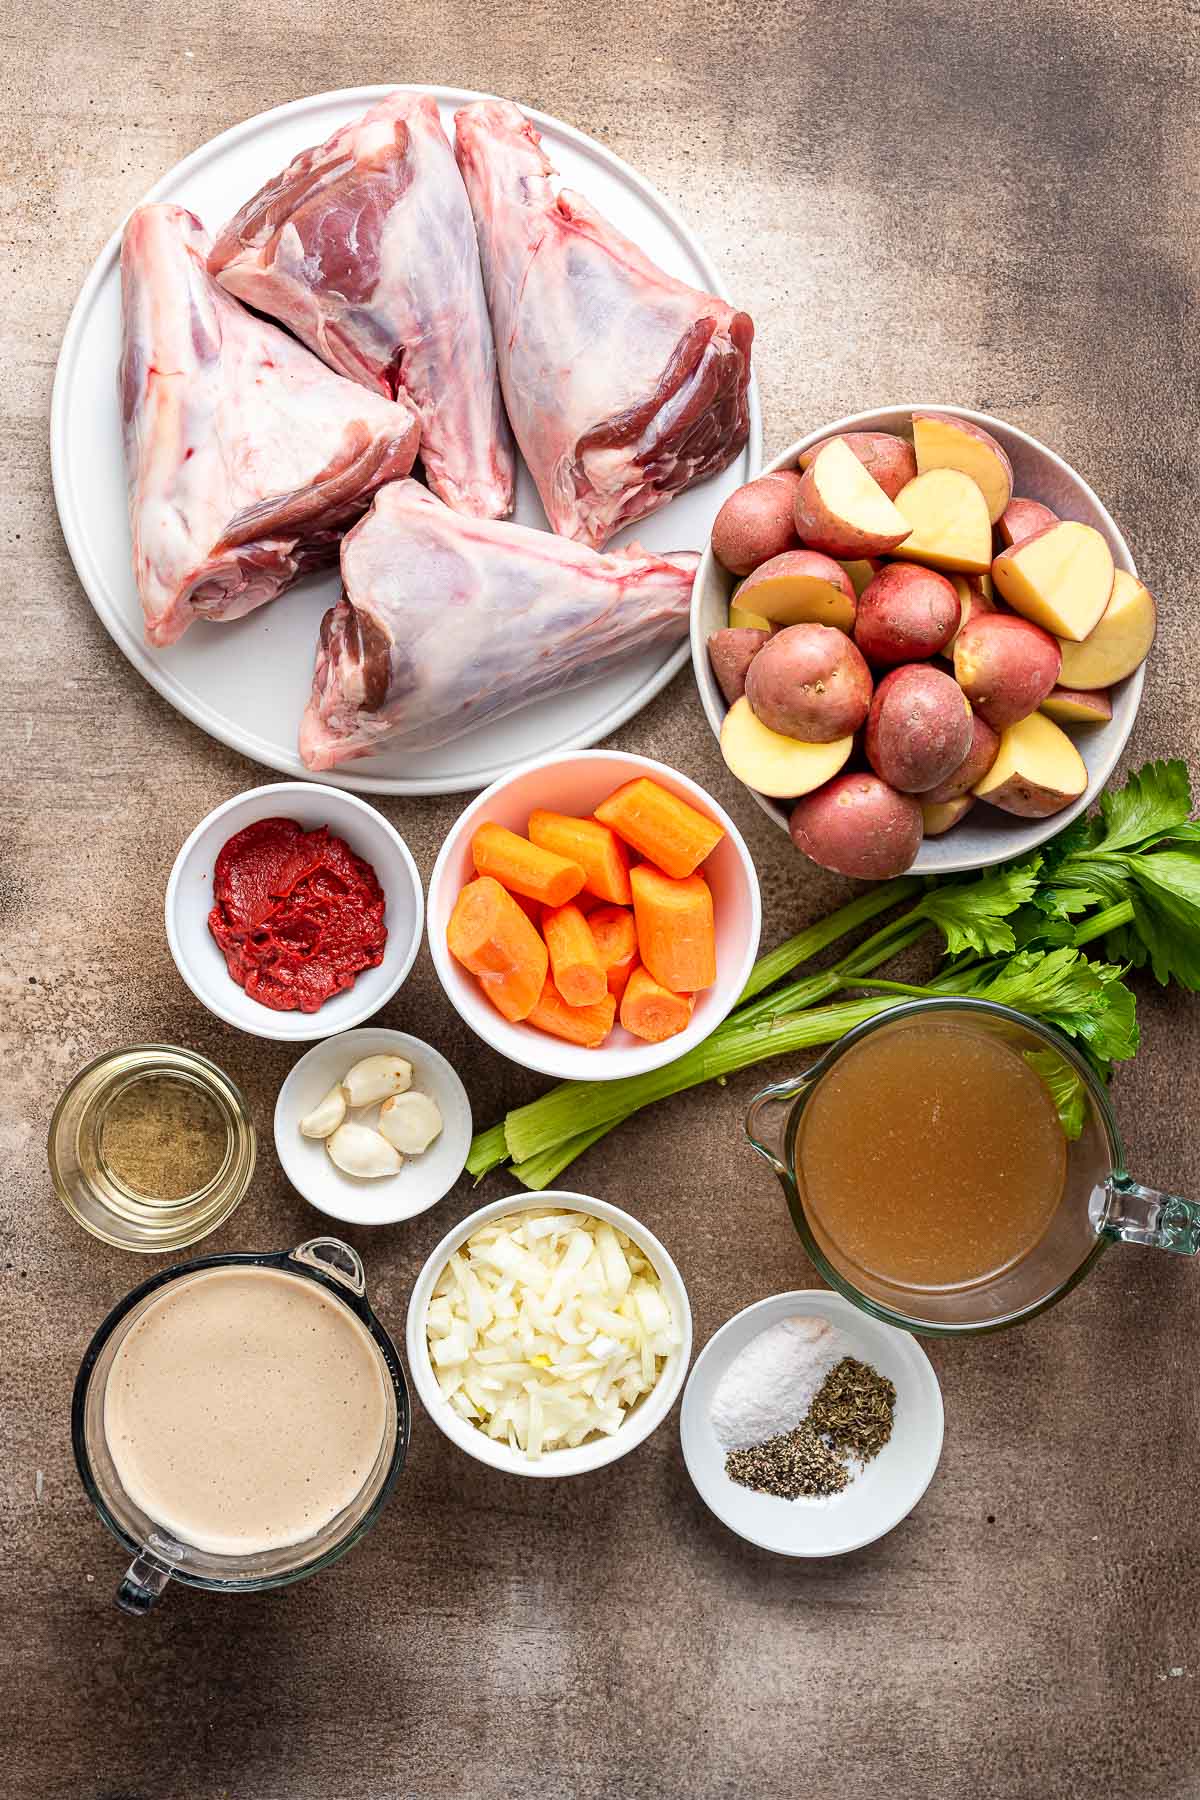 Braised Lamb Shanks ingredients in bowls